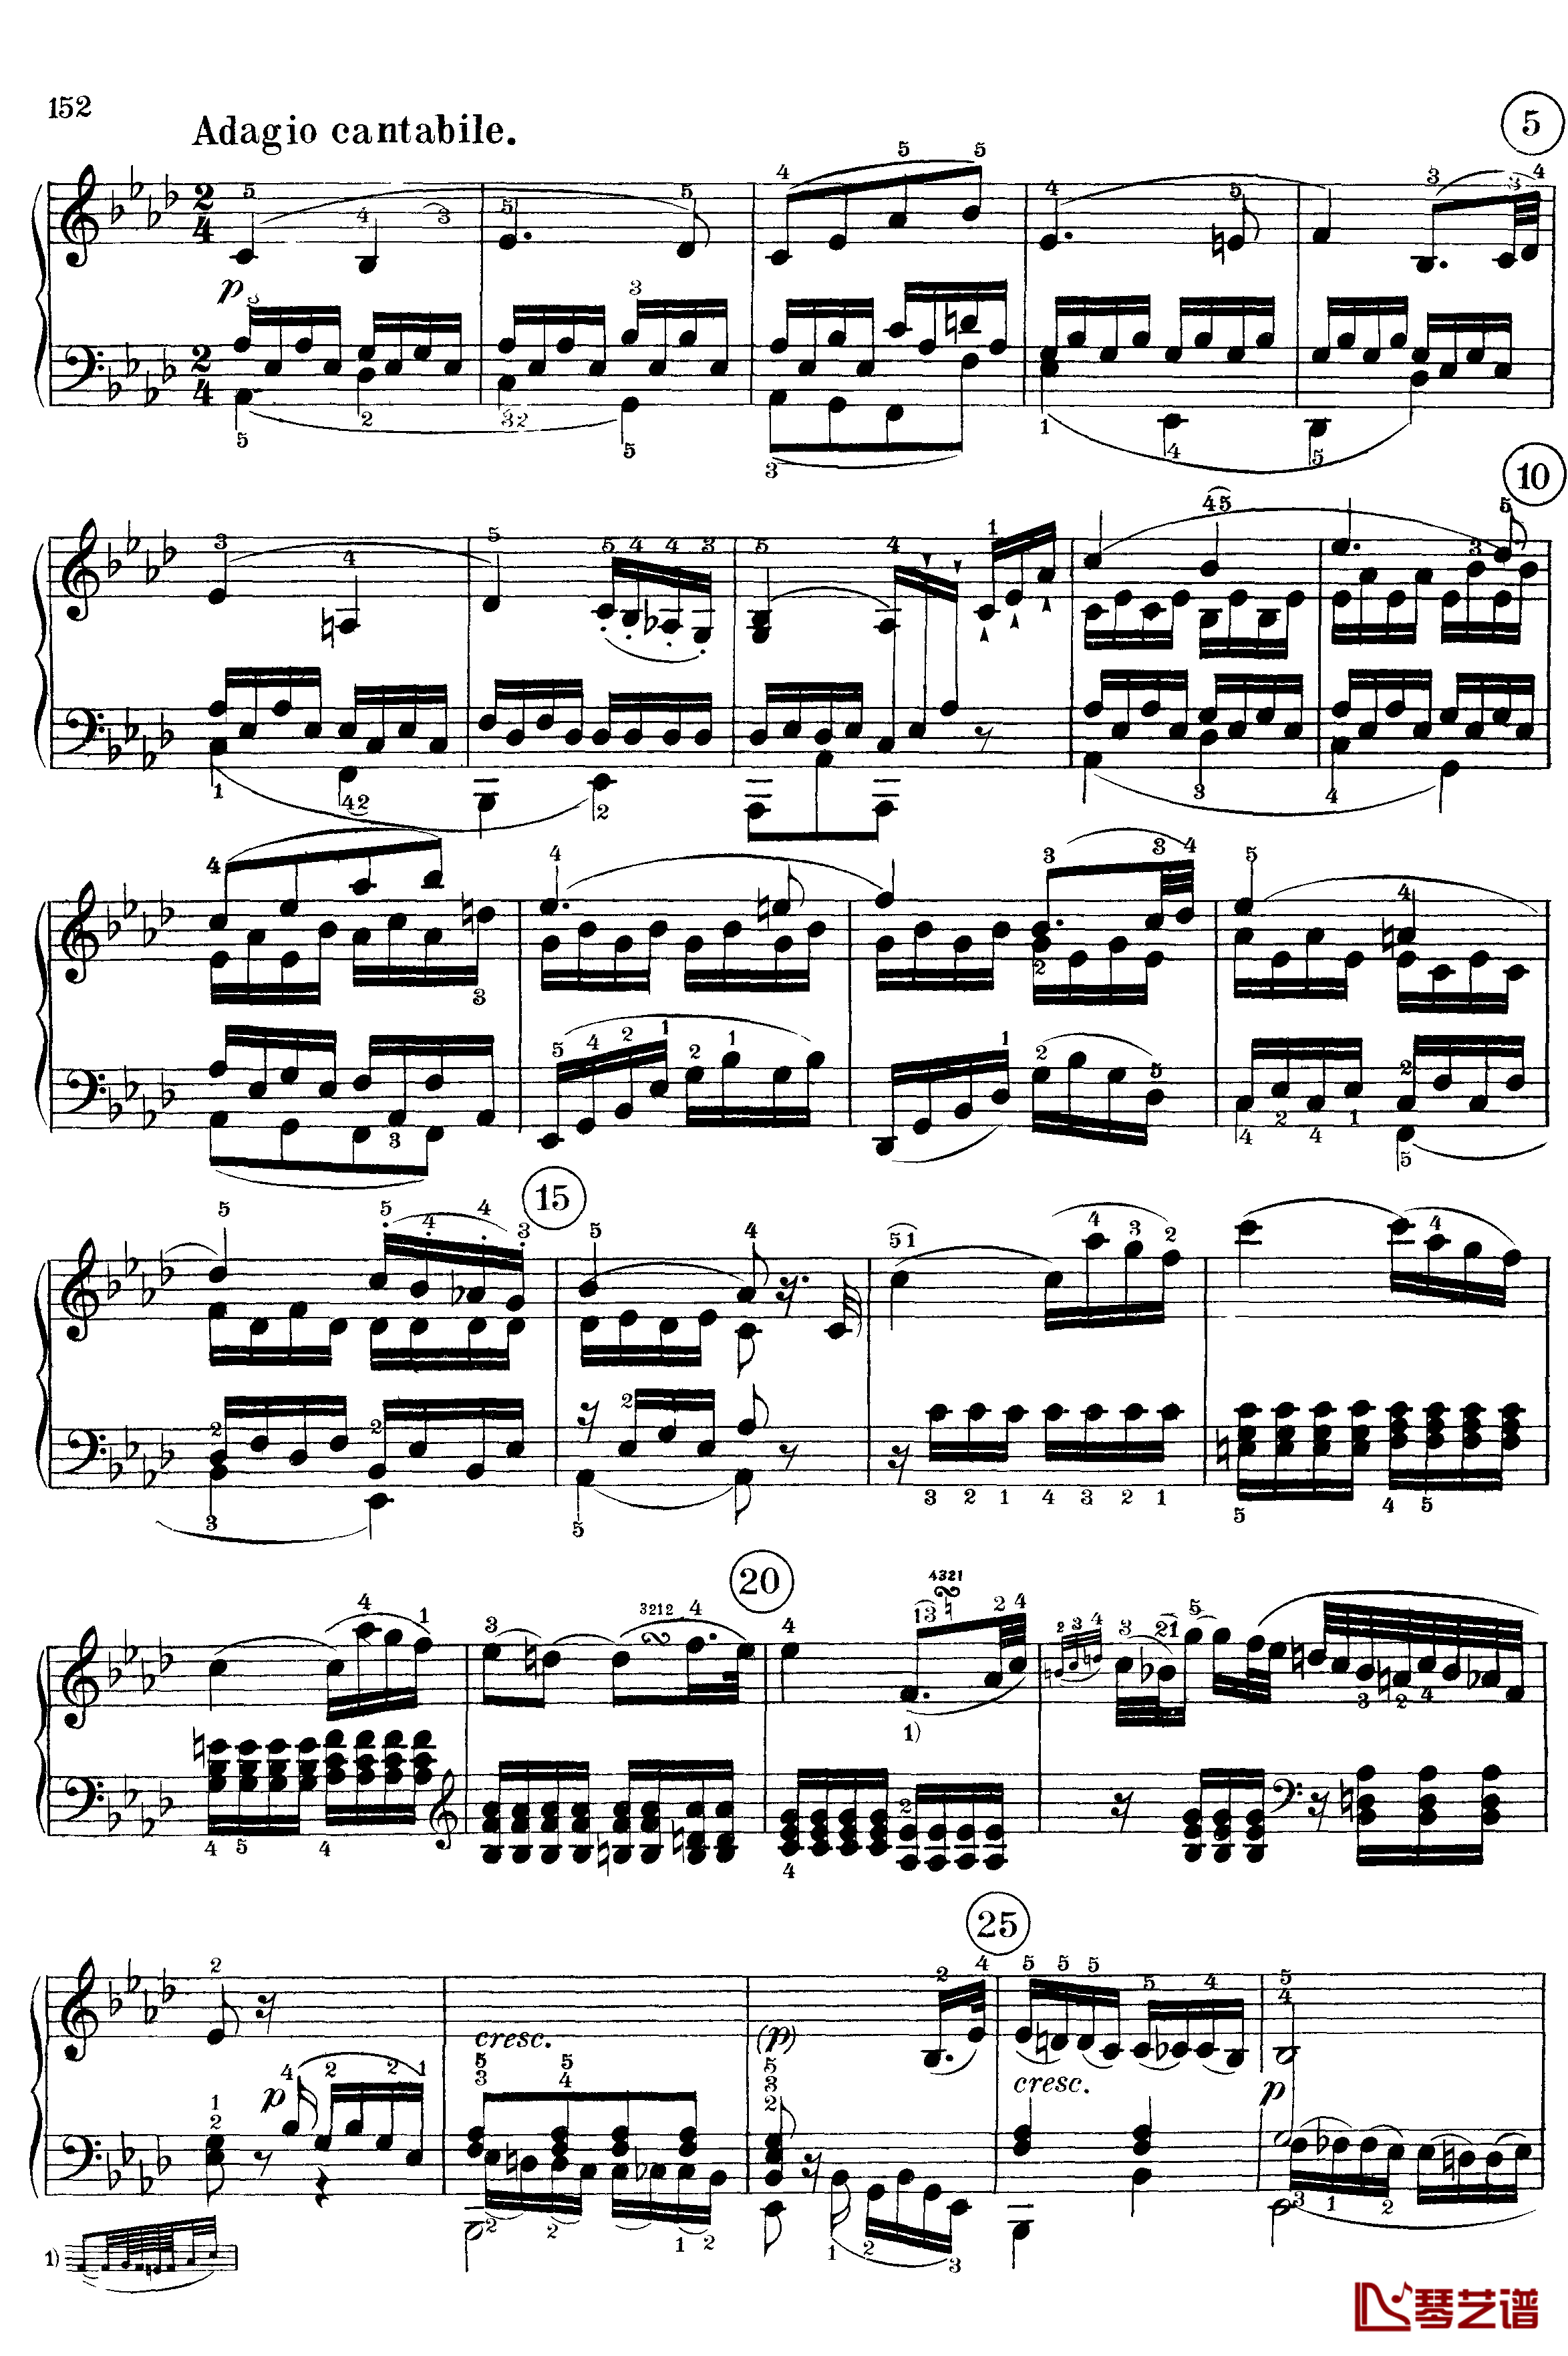 悲怆钢琴谱-c小调第八号钢琴奏鸣曲-全乐章-带指法版-贝多芬-beethoven10